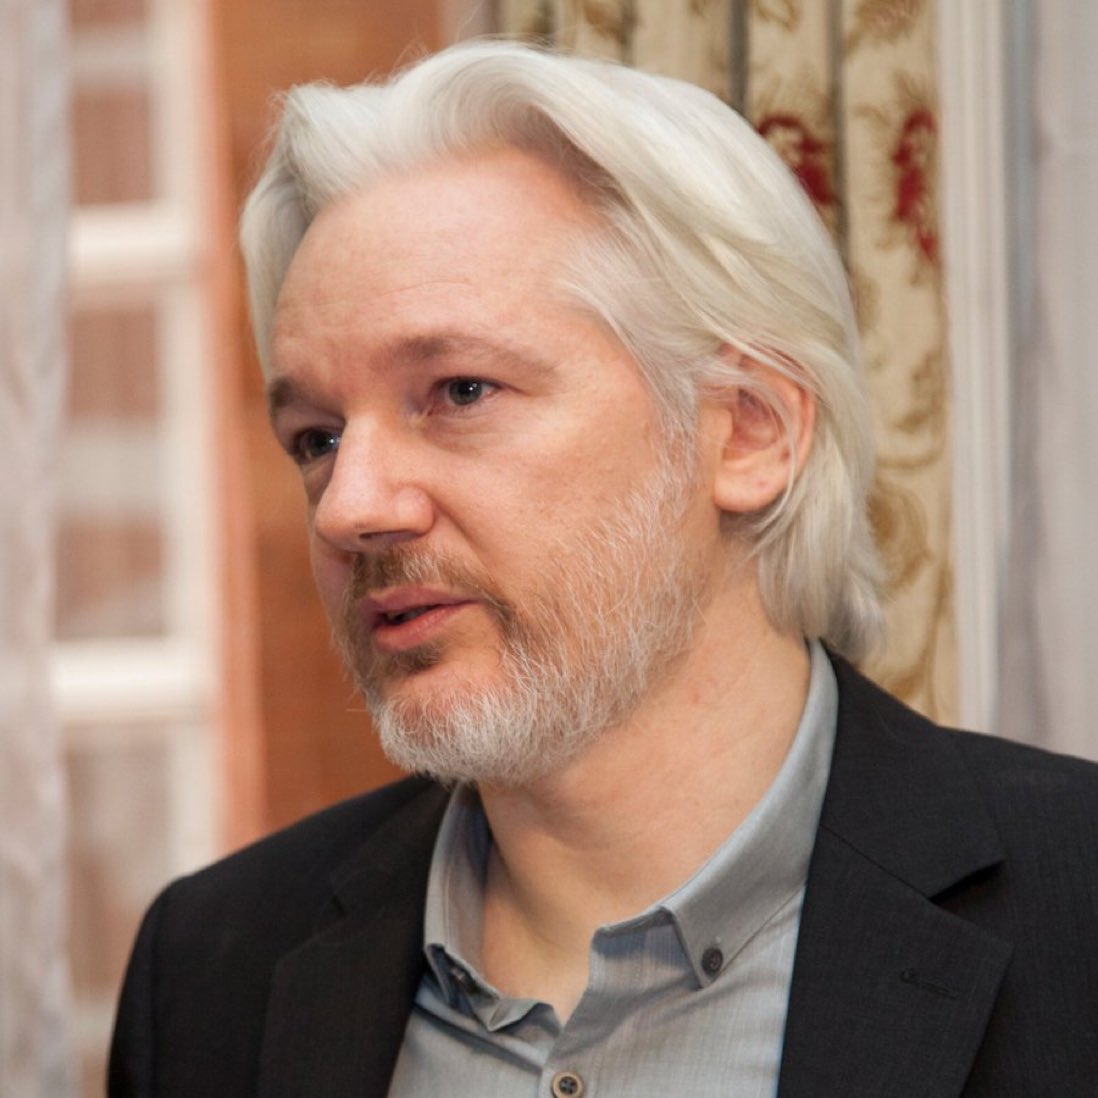 Une audience de la Haute Cour Britannique décidera le 20 mai prochain si l'autorisation de faire appel de Julian Assange peut être accordée.. Le destin et la vie d’un homme est en jeu ! #FreeAssange #FreeAssangeNOW @Stella_Assange @PhilConte6_0